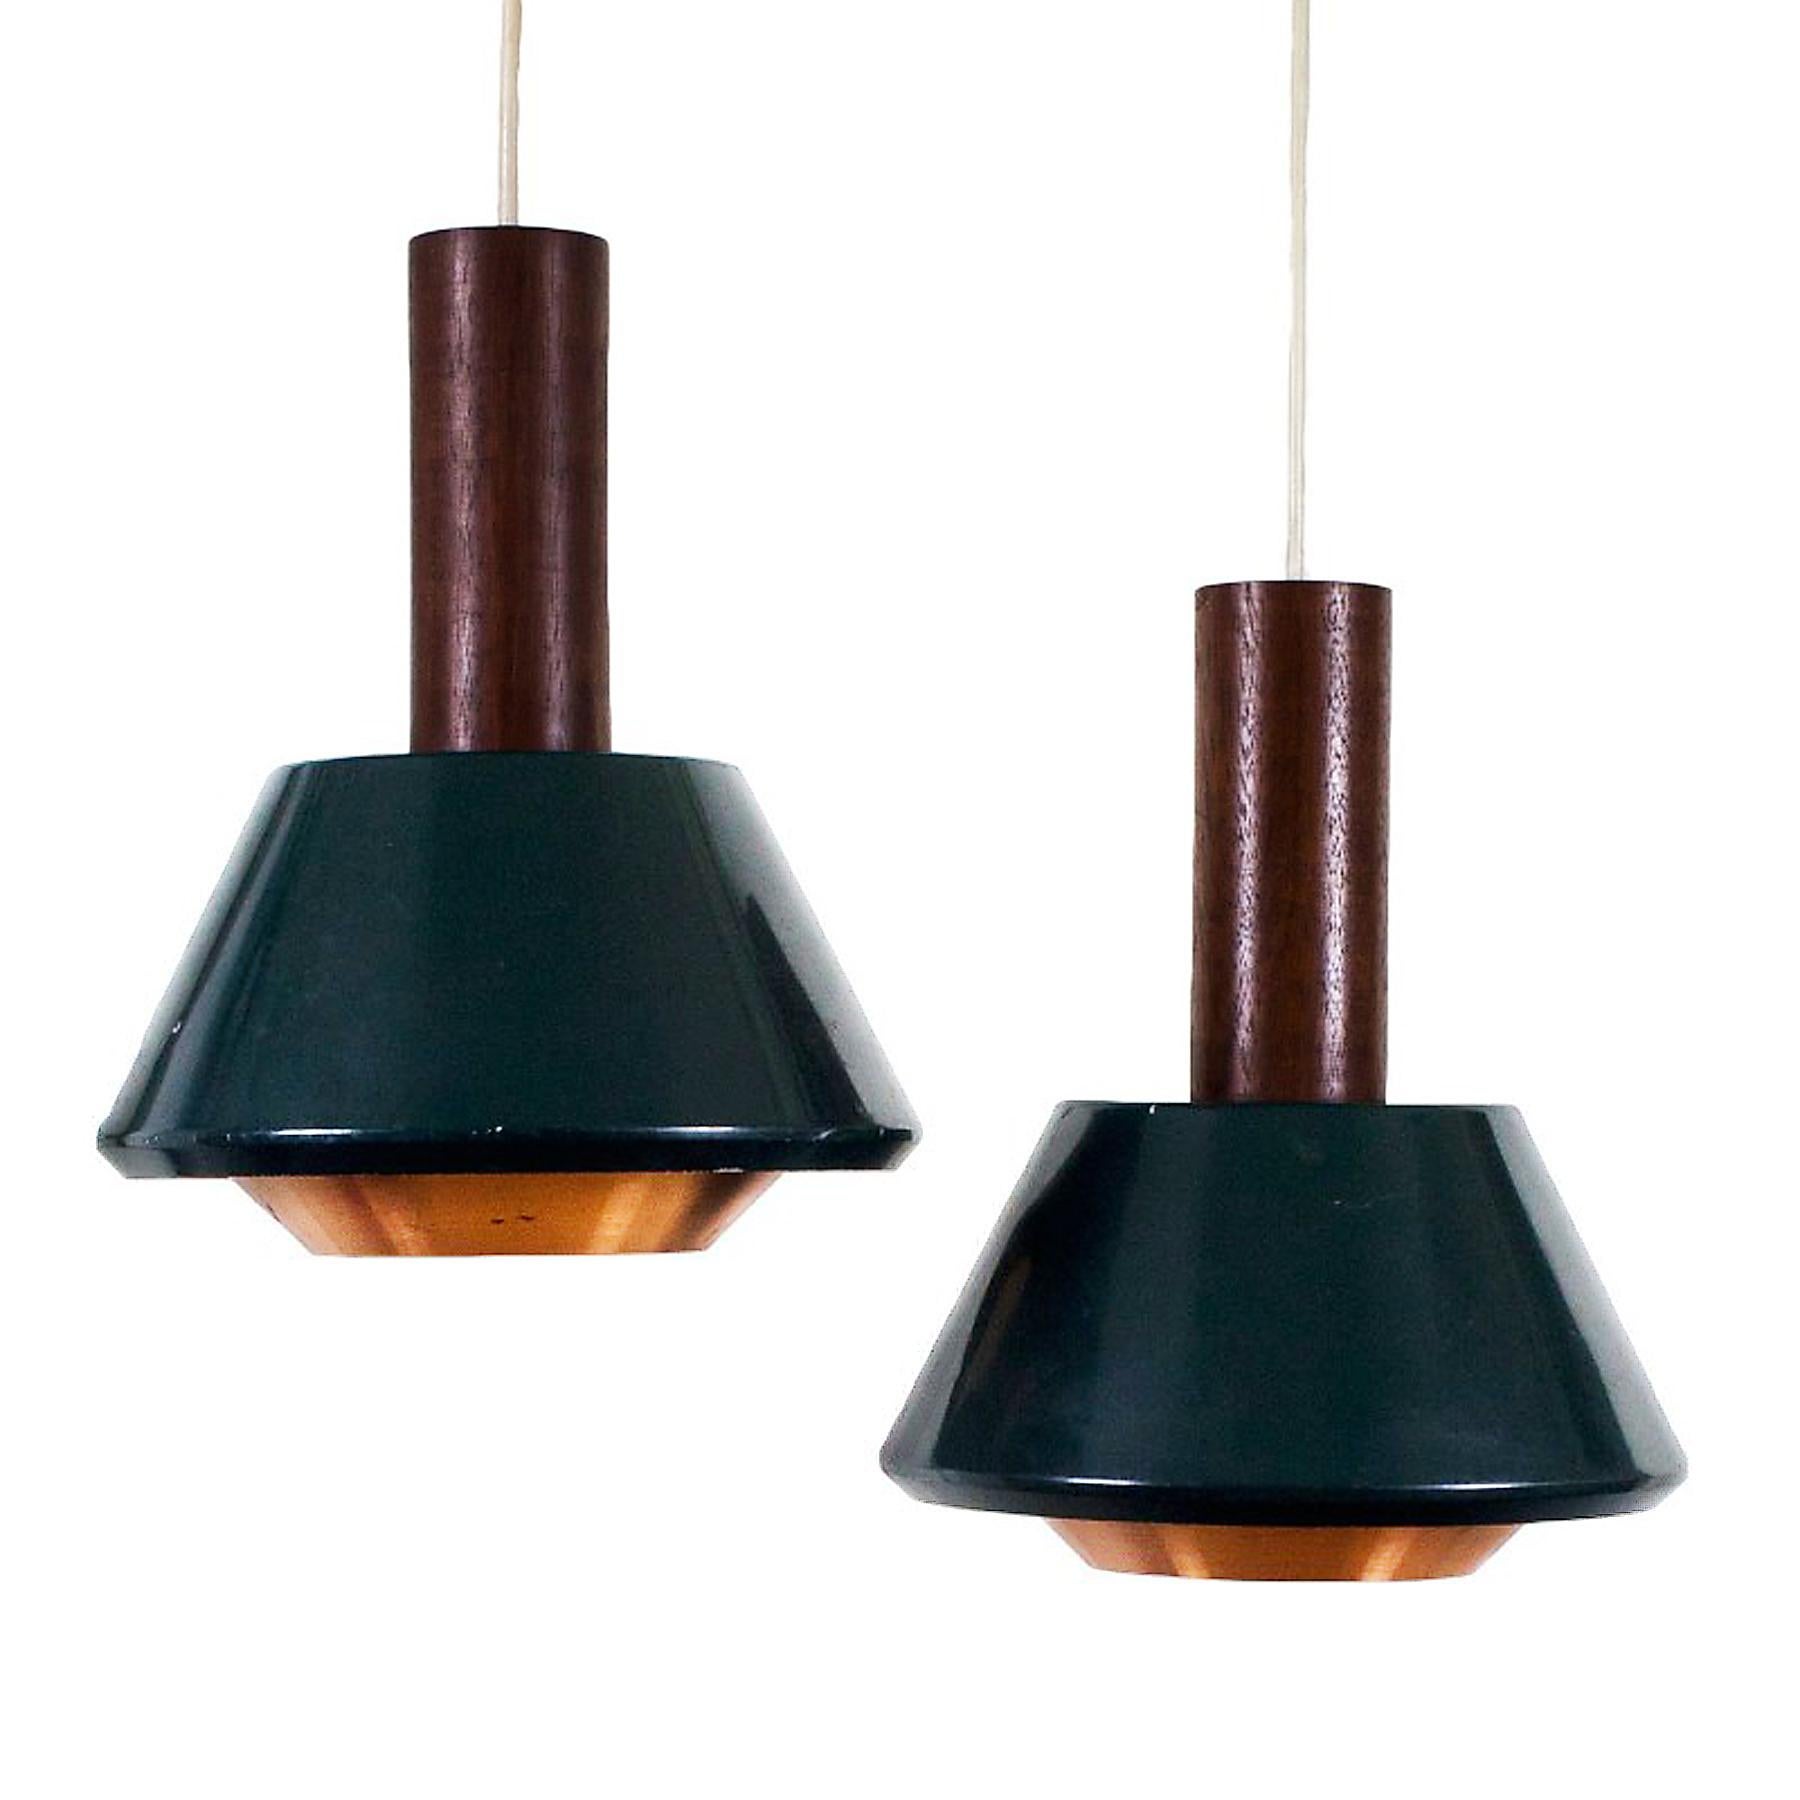 Paire de lampes suspendues en teck, métal laqué vert et diffuseur en cuivre.
Design/One Denis Casey

A.I.C. C. 1950